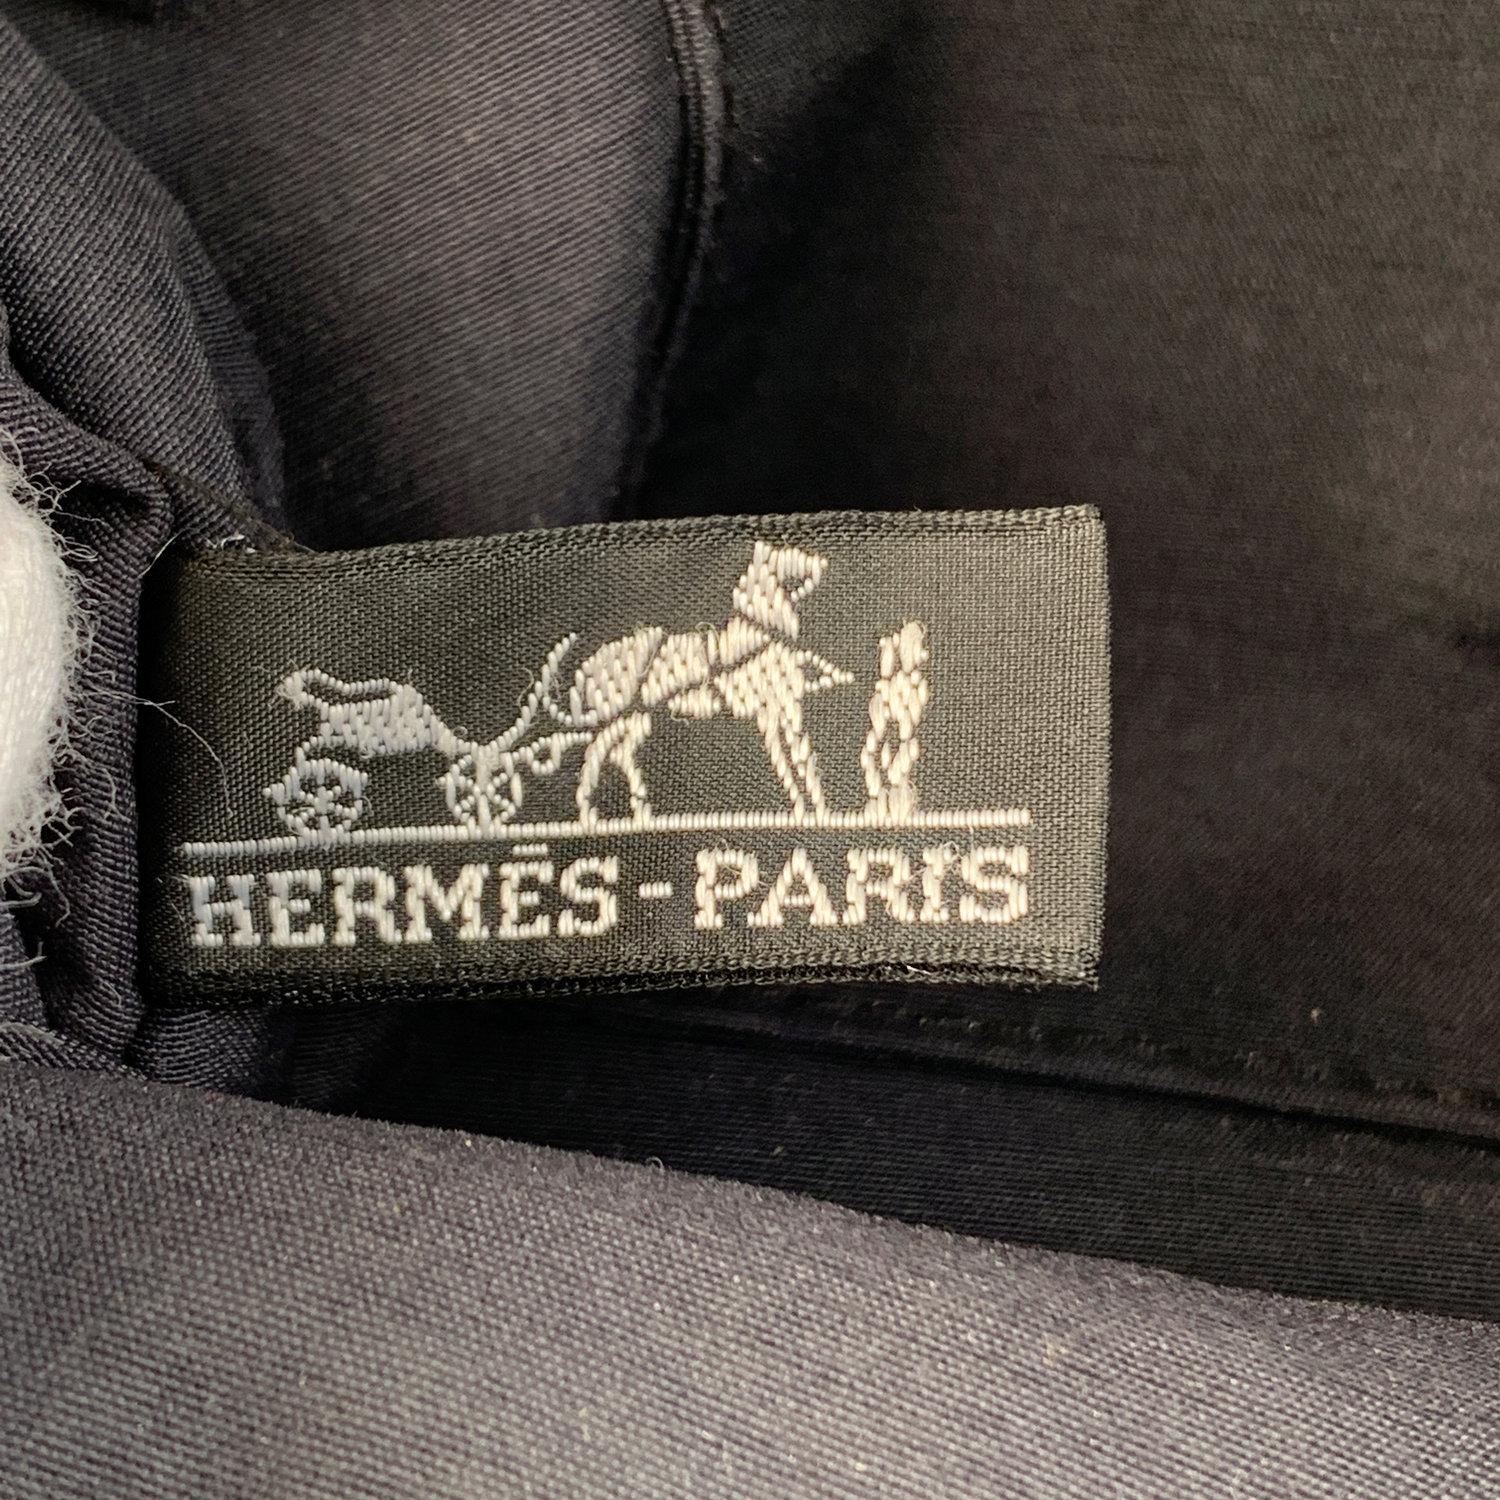 Hermes Paris Black Cotton Canvas Bolide Travel Case Cosmetic Bag 3